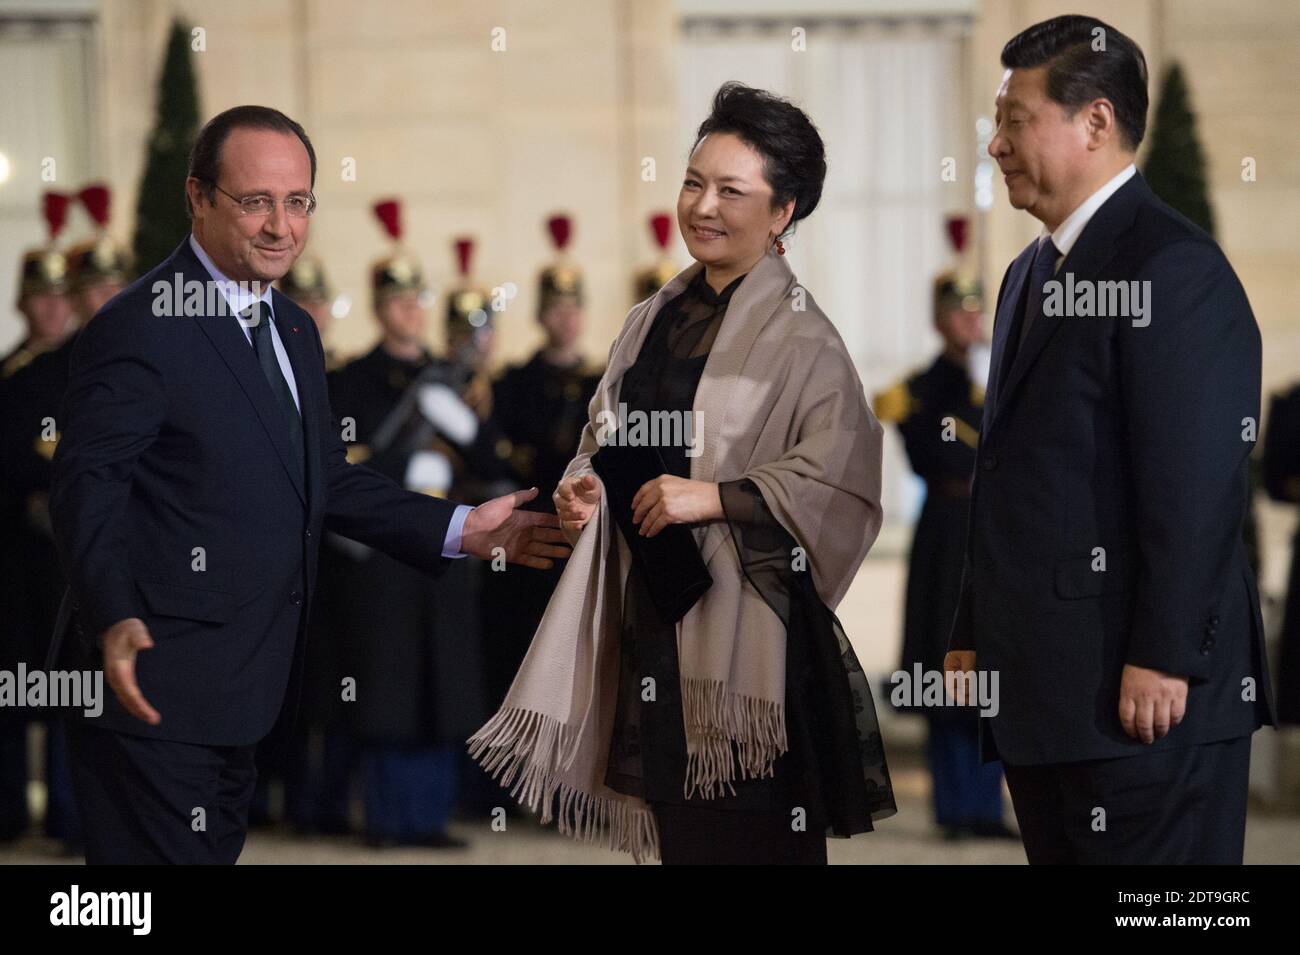 Il presidente cinese Xi Jinping e sua moglie Peng Liyuan sono accolti dal presidente Francois Hollande prima di una cena ufficiale al palazzo presidenziale Elysee , a Parigi, in Francia, il 26 marzo 2014. Foto di Christophe Guibbaud/ABACAPRESS.COM Foto Stock